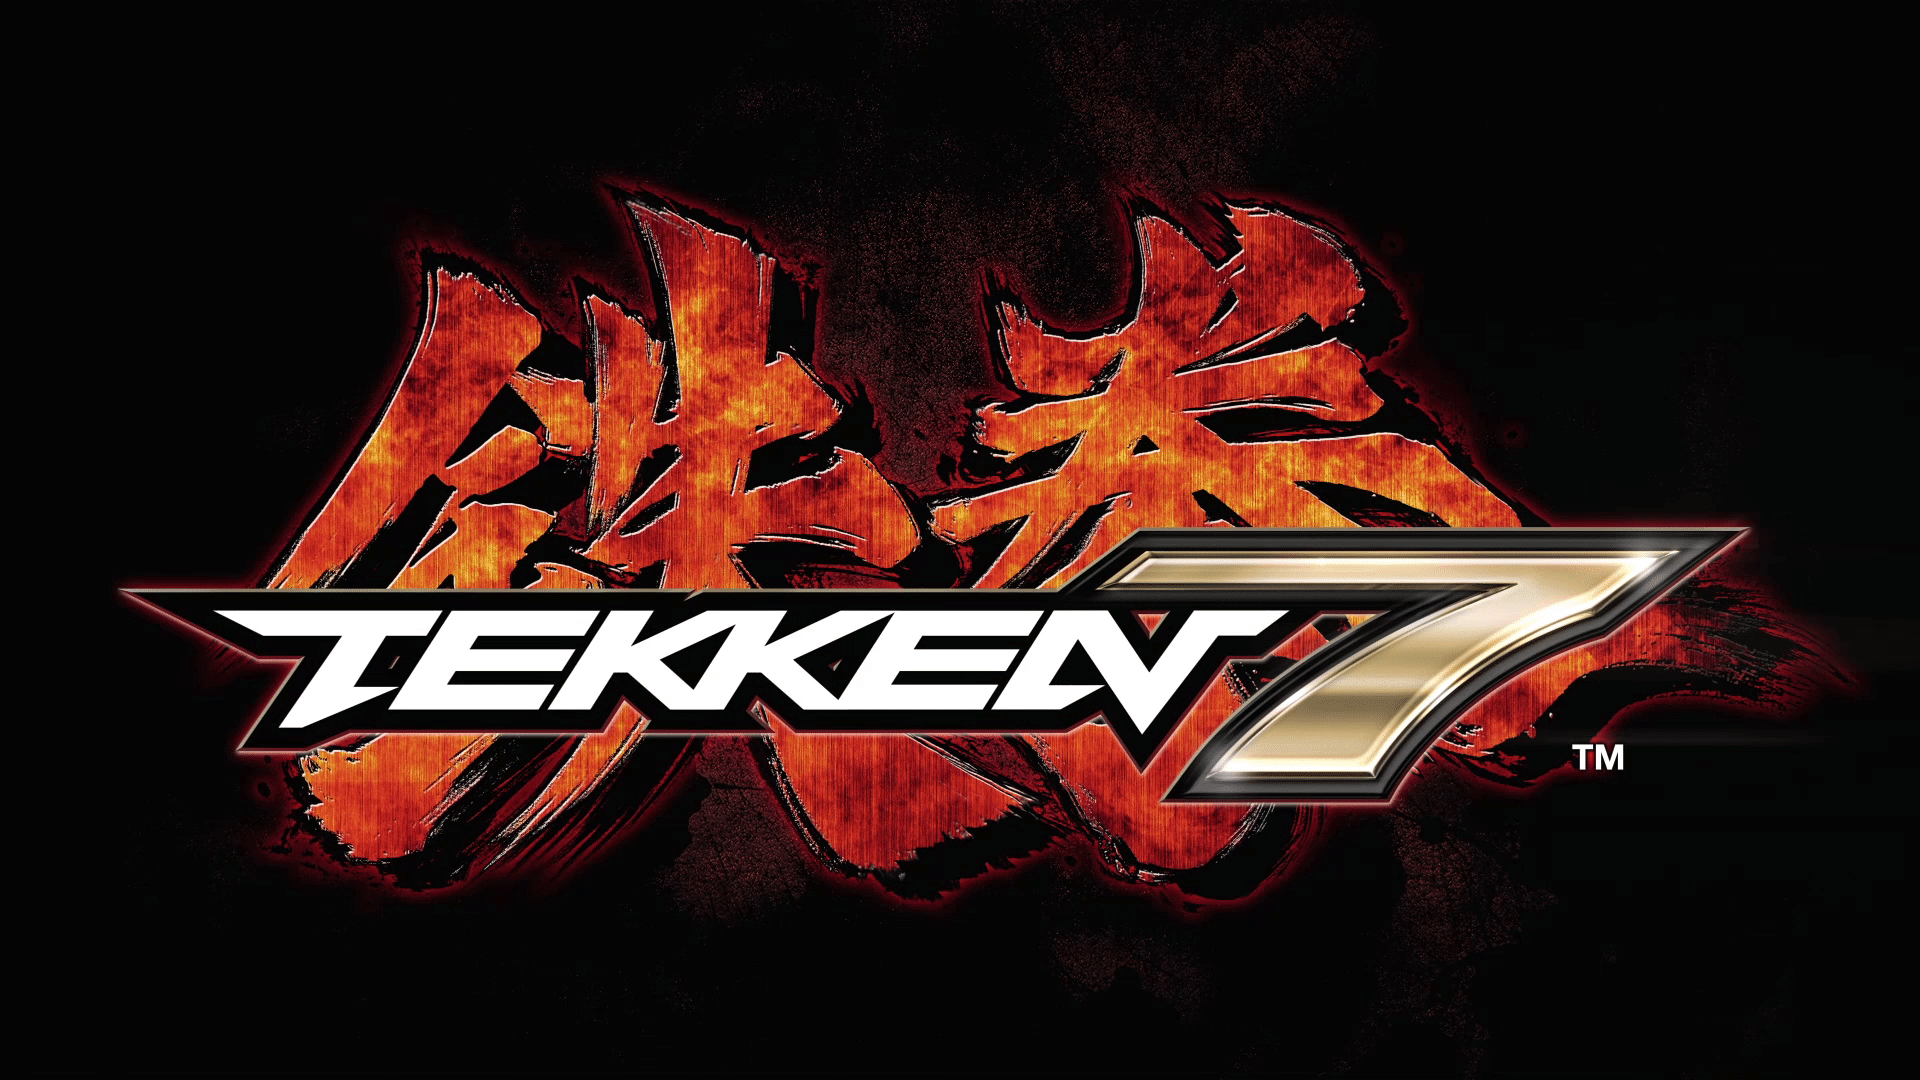 Chequea el nuevo trailer de la historia de Tekken 7